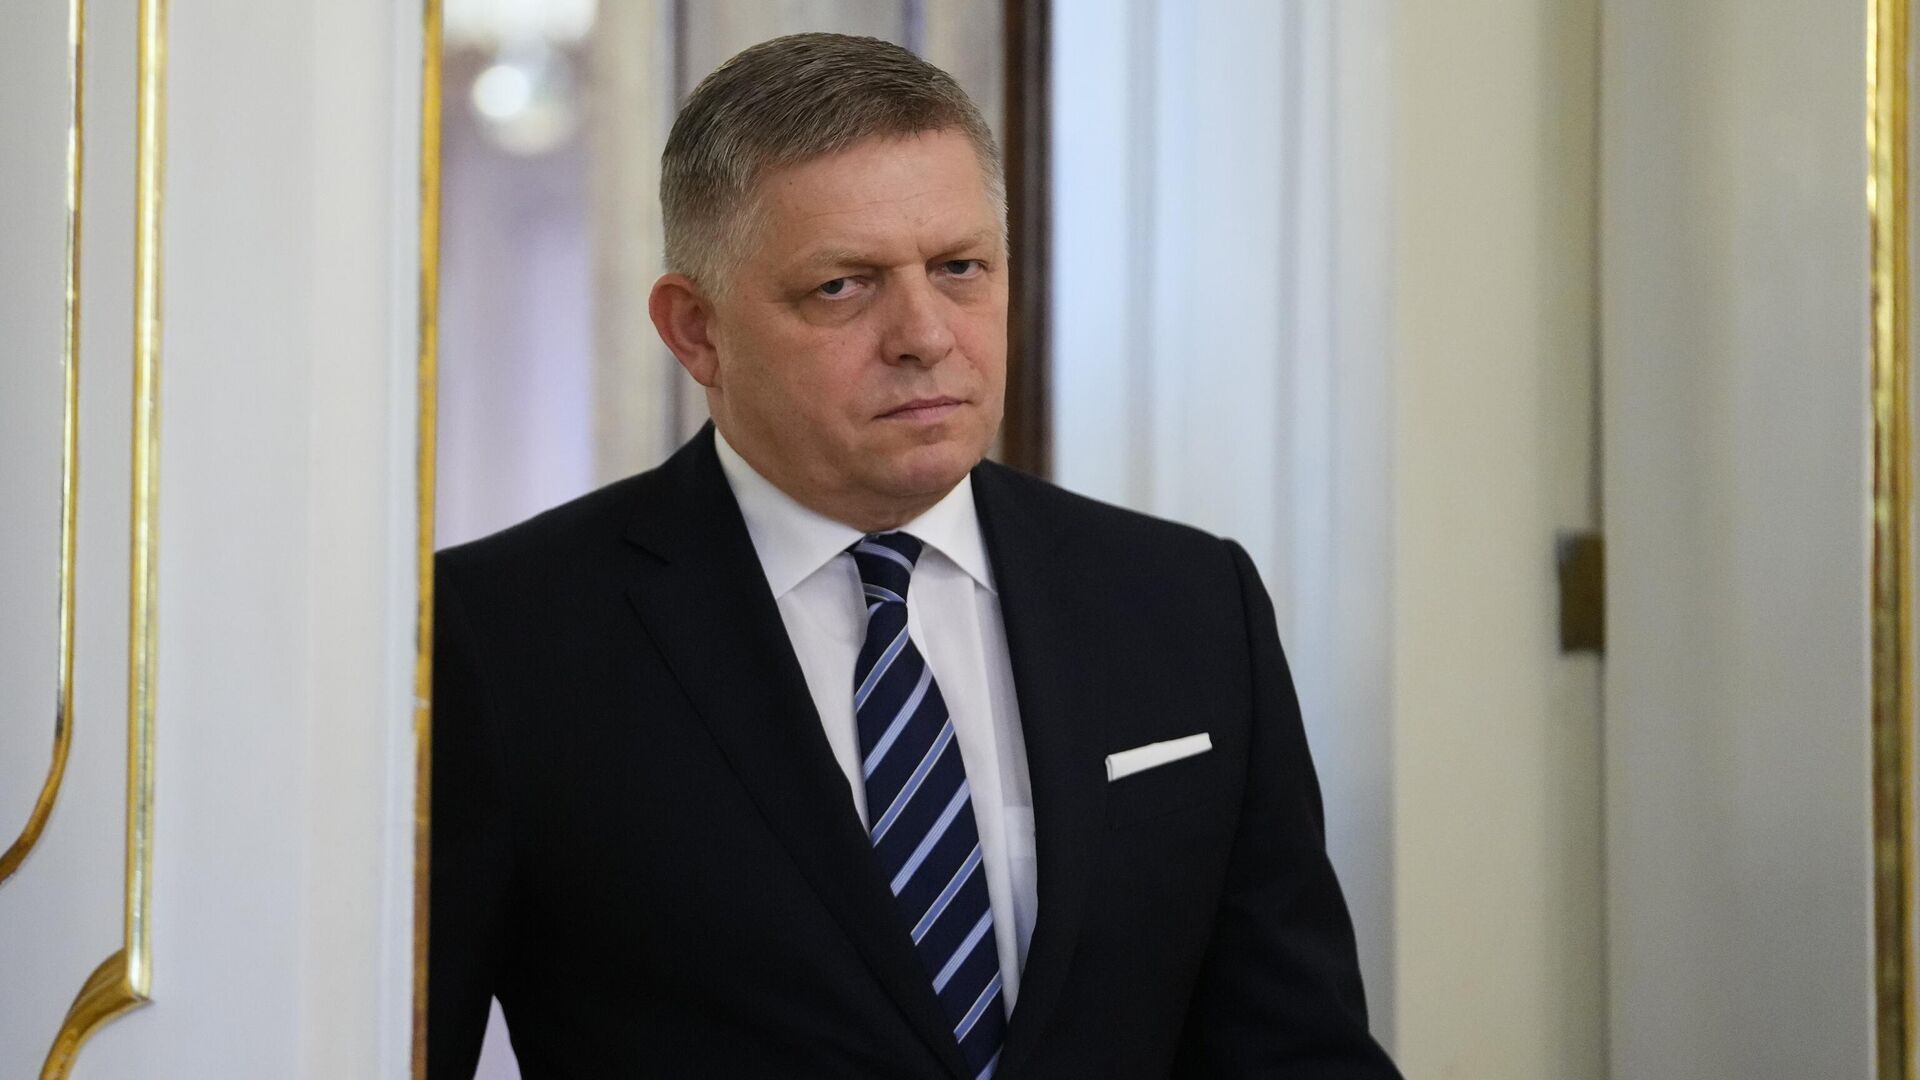 Xung đột Ukraine: Slovakia nói không tin sự chân thành của phương Tây, Thủ tướng Fico 'sốc' vì phản ứng của Anh